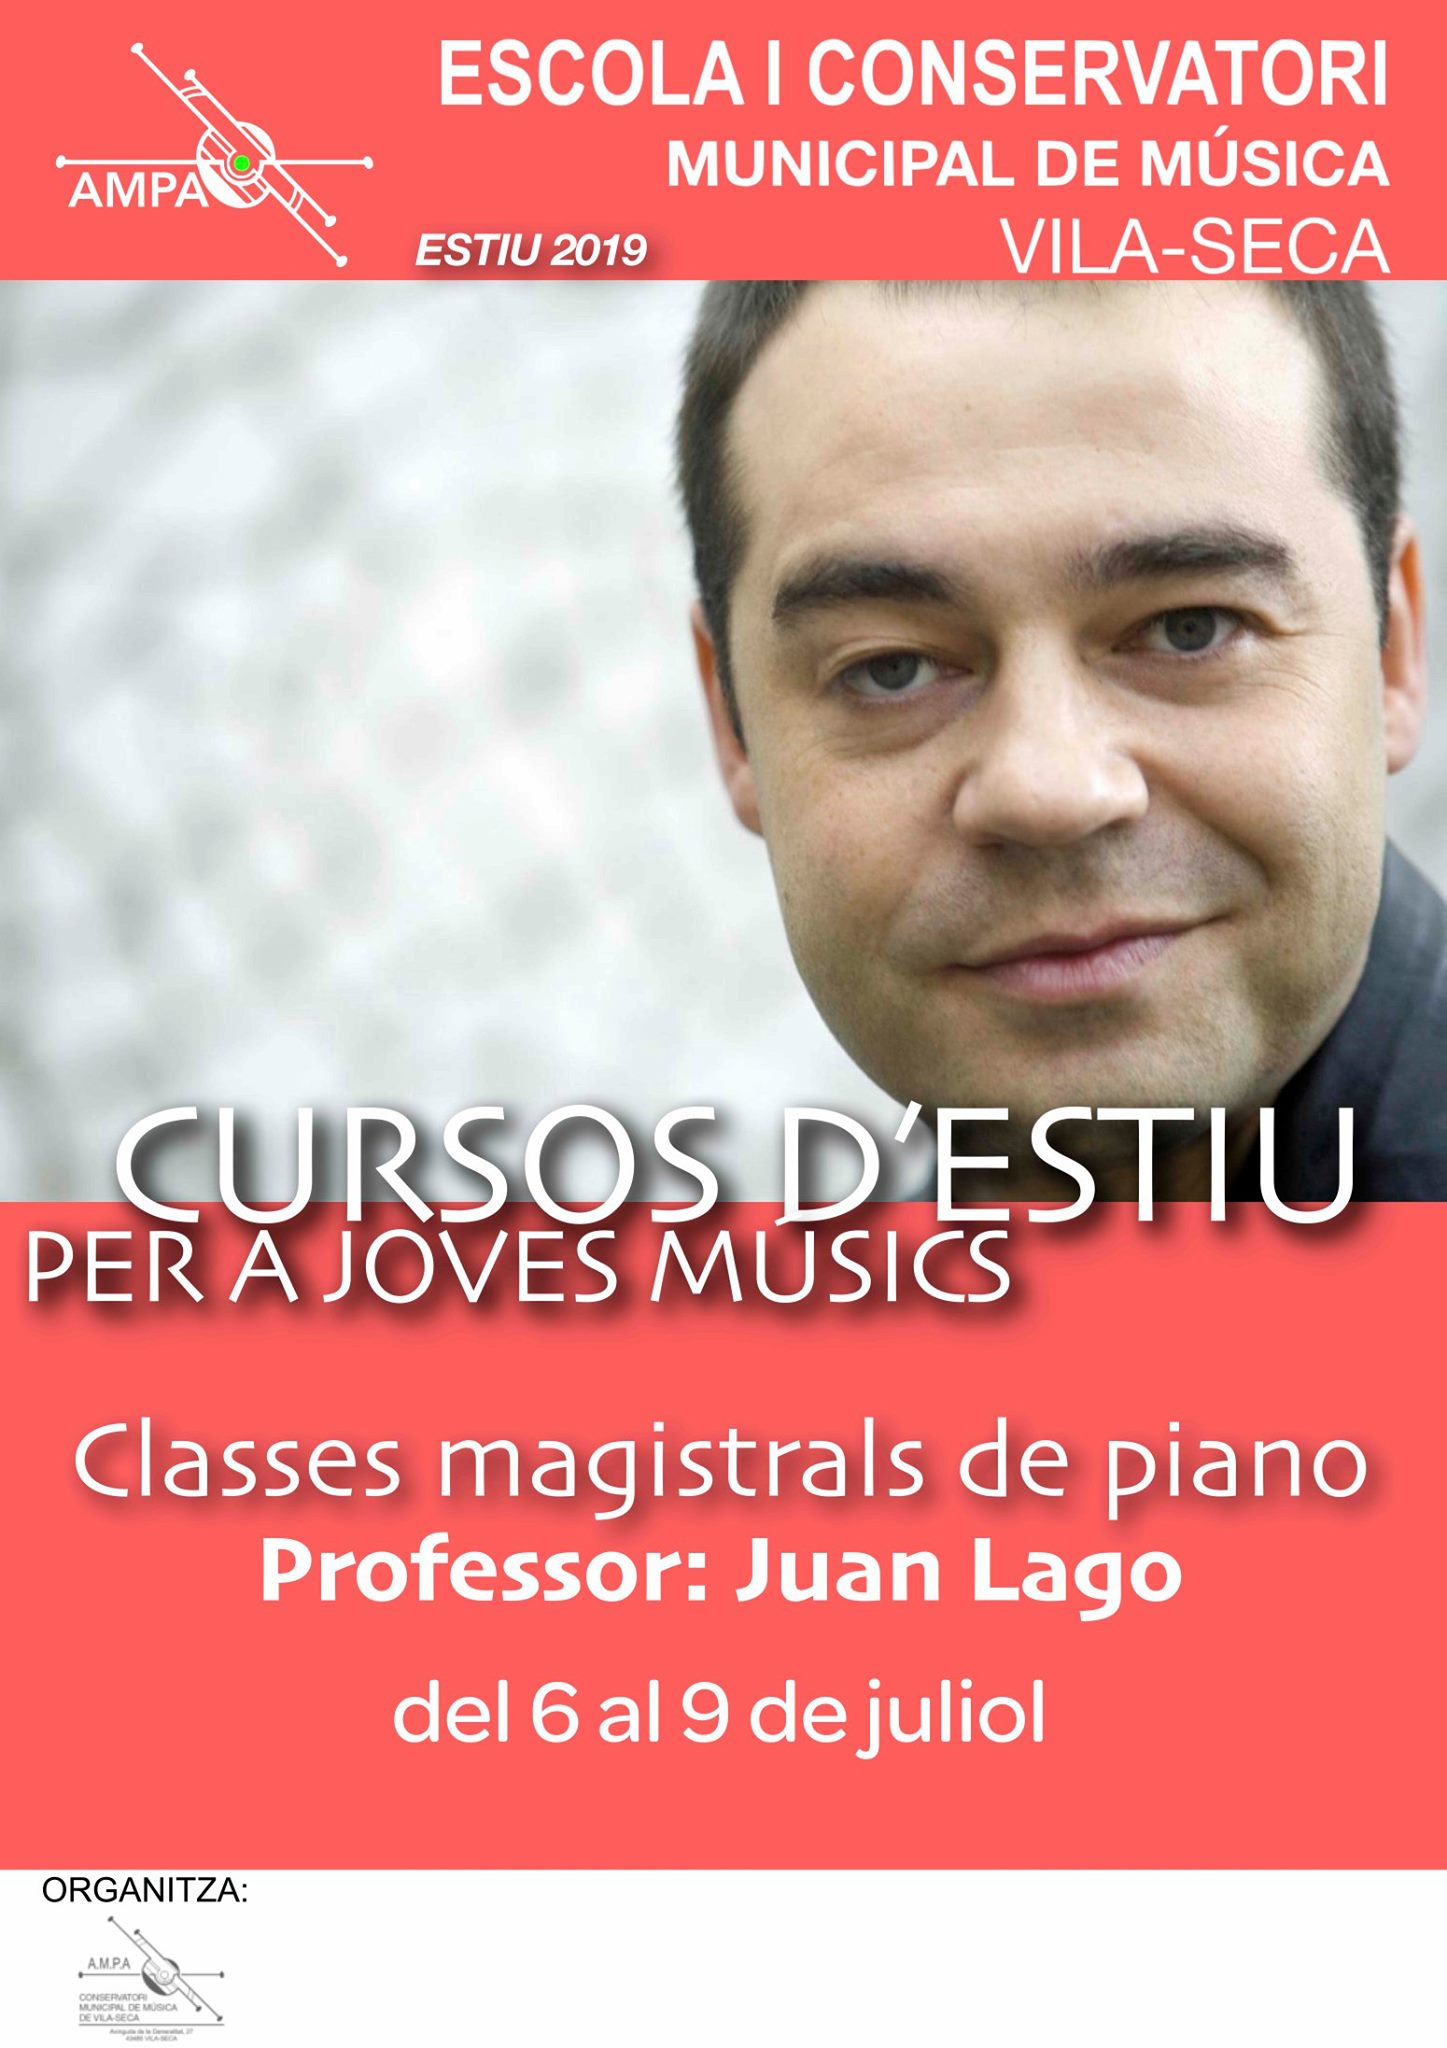 Inscripcions obertes al Curs d'Estiu de Joves Músics amb el pianista Juan Lago